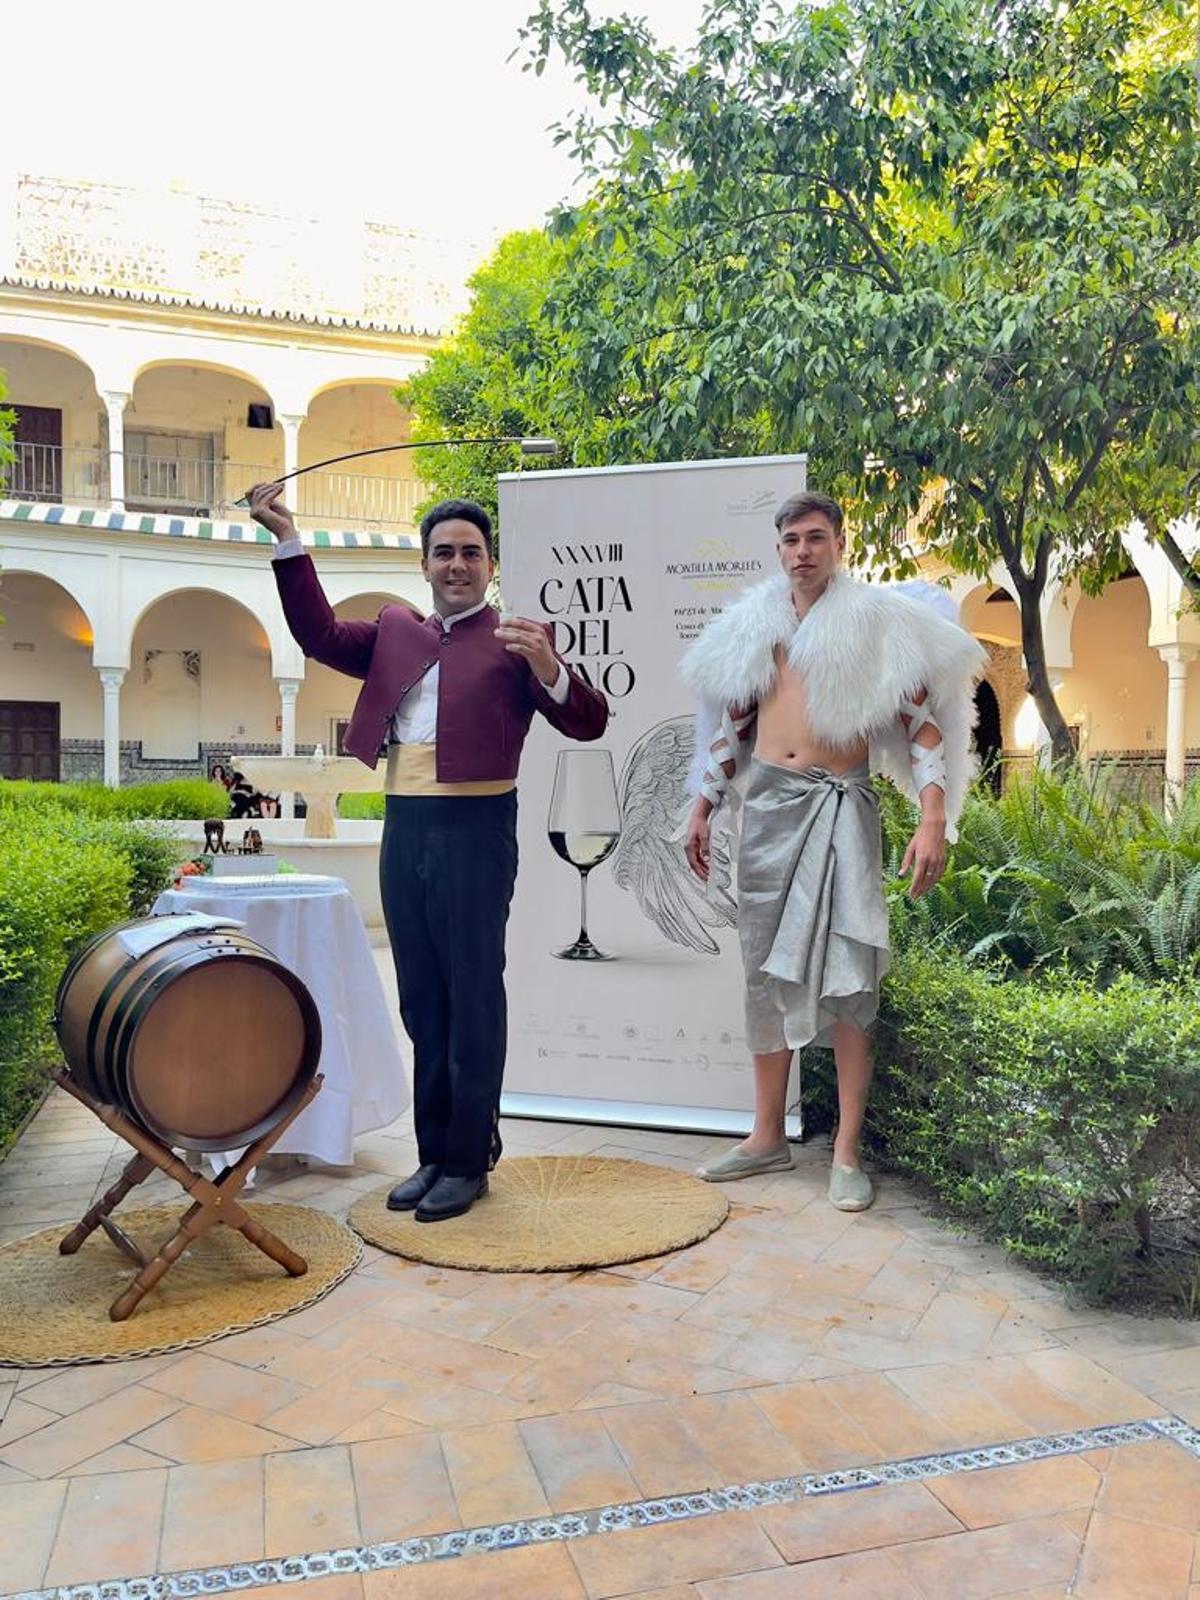 Presentación de la Cata del Vino de Córdoba en Sevilla.